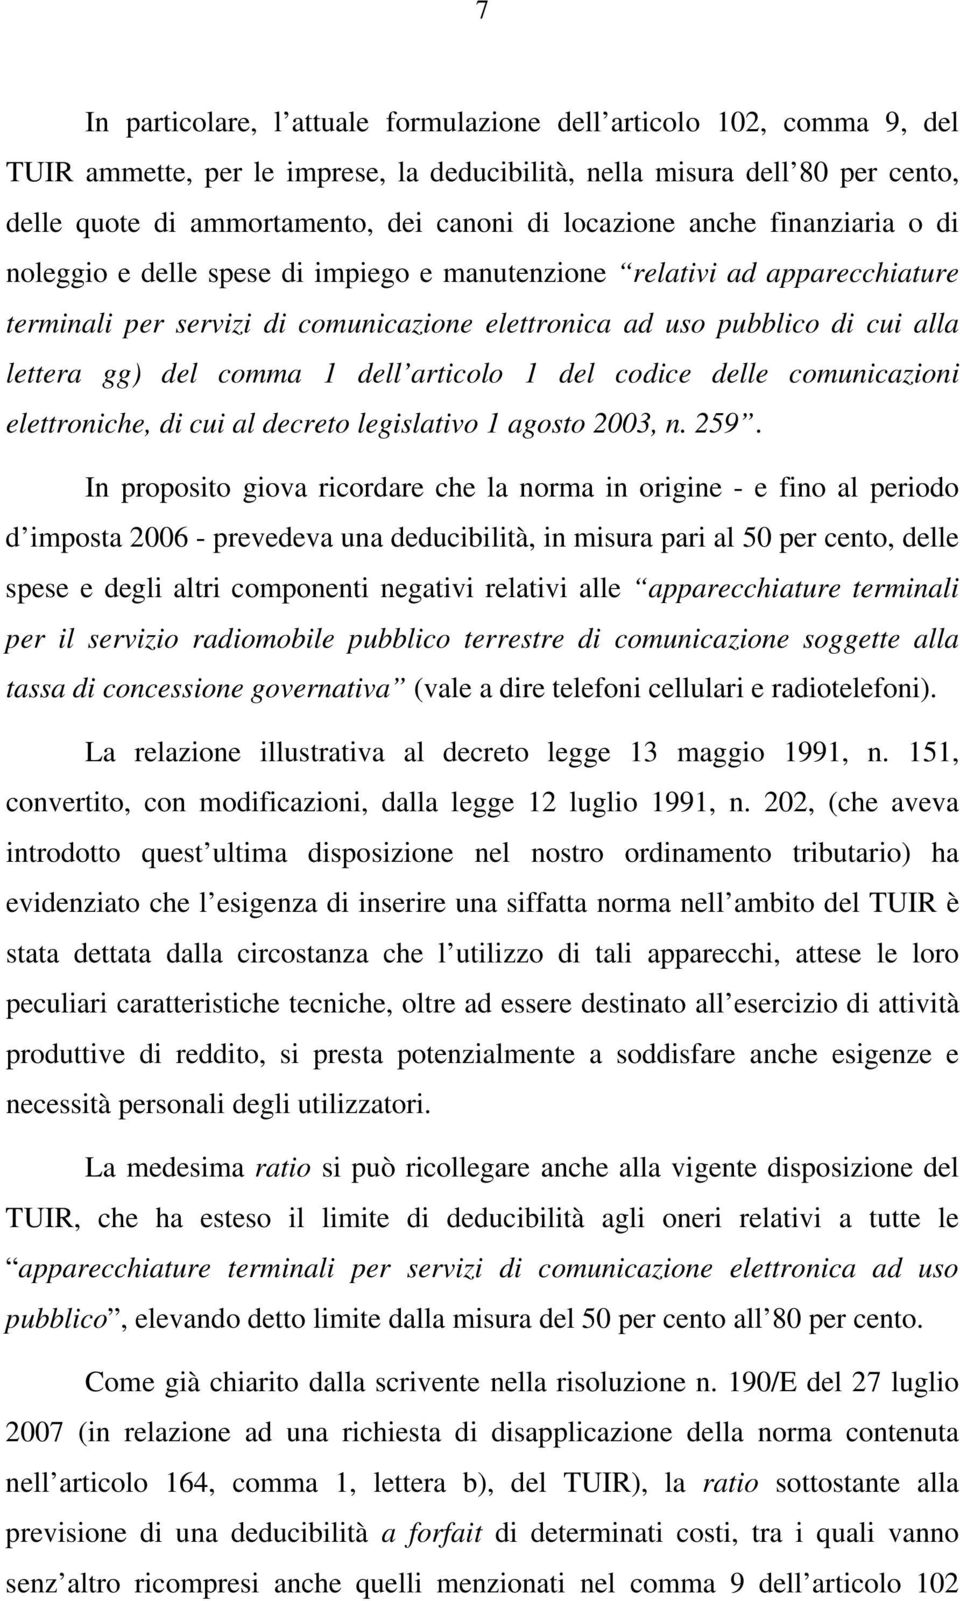 gg) del comma 1 dell articolo 1 del codice delle comunicazioni elettroniche, di cui al decreto legislativo 1 agosto 2003, n. 259.